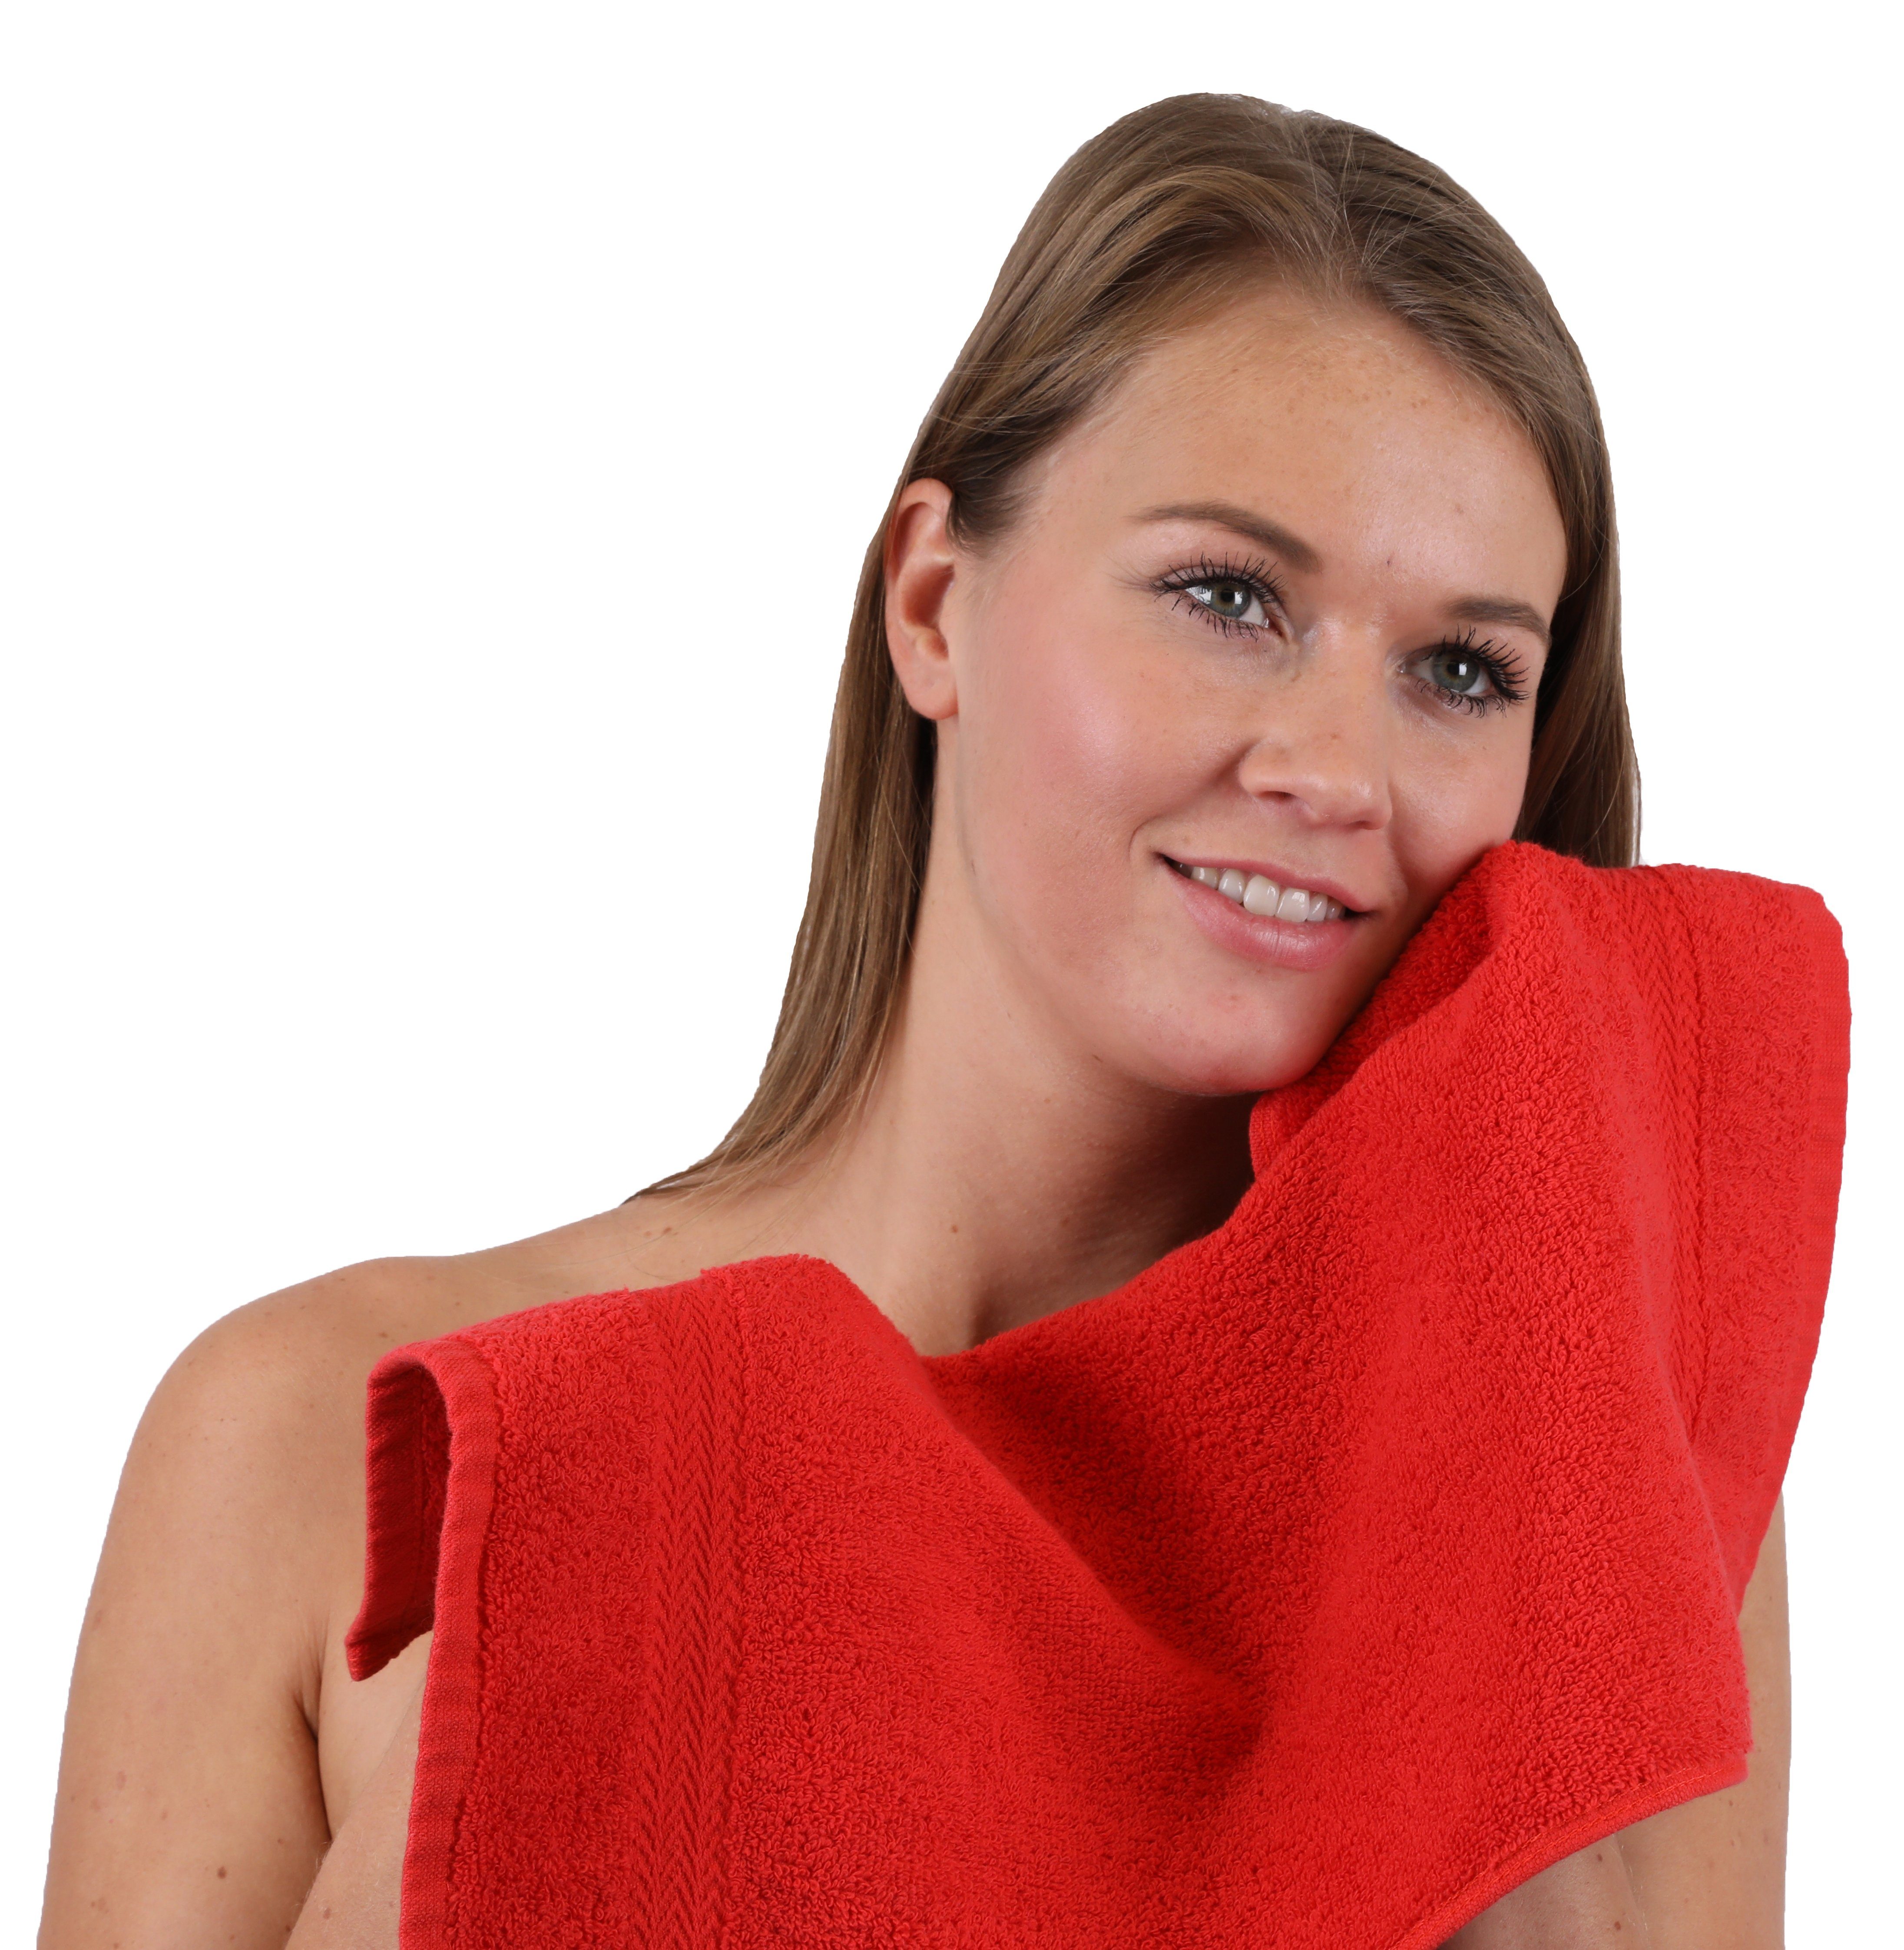 Betz Handtuch Farbe 100% 10-TLG. & Set Türkis, (10-tlg) Baumwolle, Premium Handtuch-Set Rot